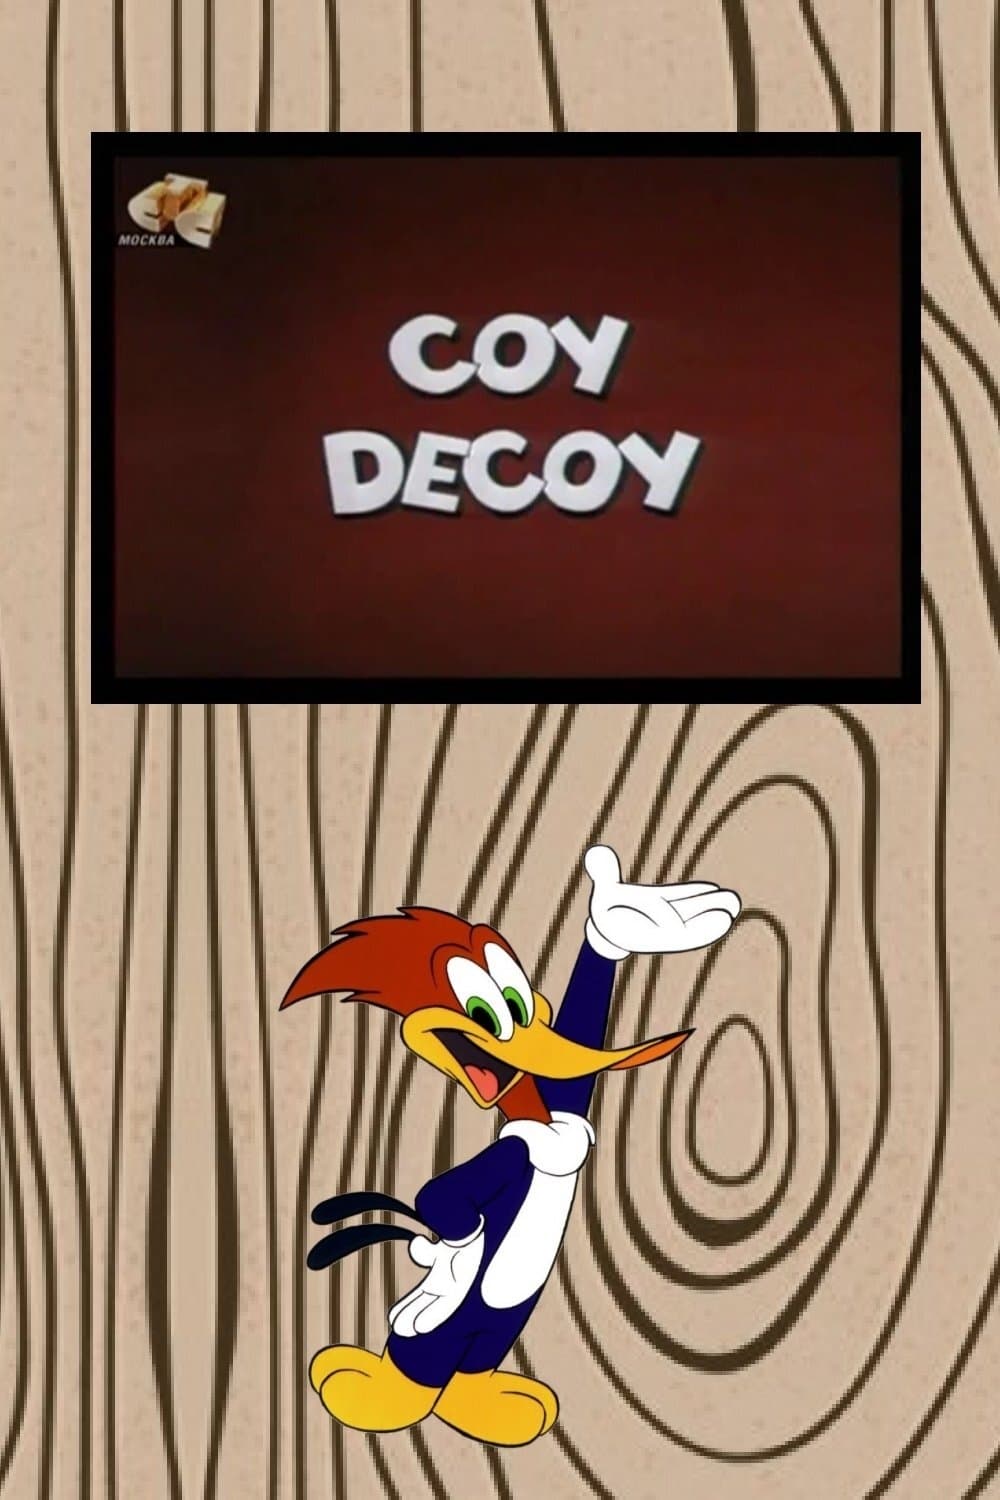 Coy Decoy (1963)